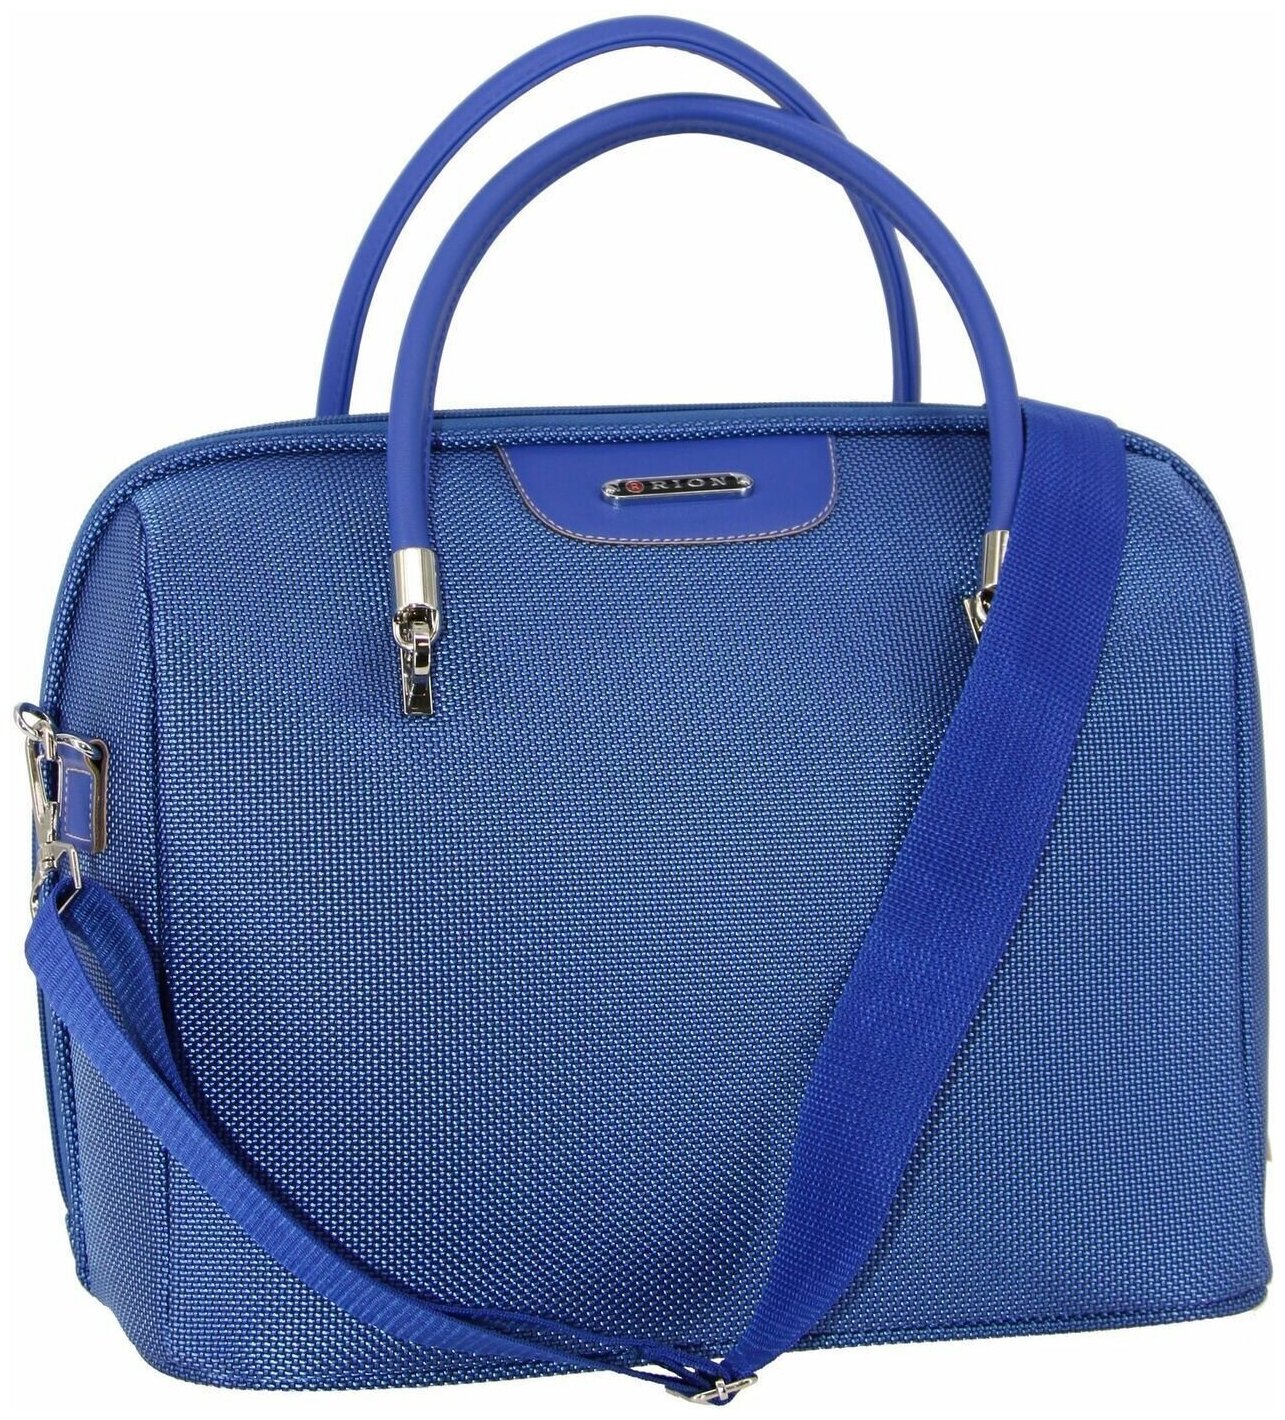 Дорожная сумка с ремнем на ручку чемодана Рион+ (RION+) / ручная кладь для самолета / саквояж , R240, Тканевая, 20 литров, голубой